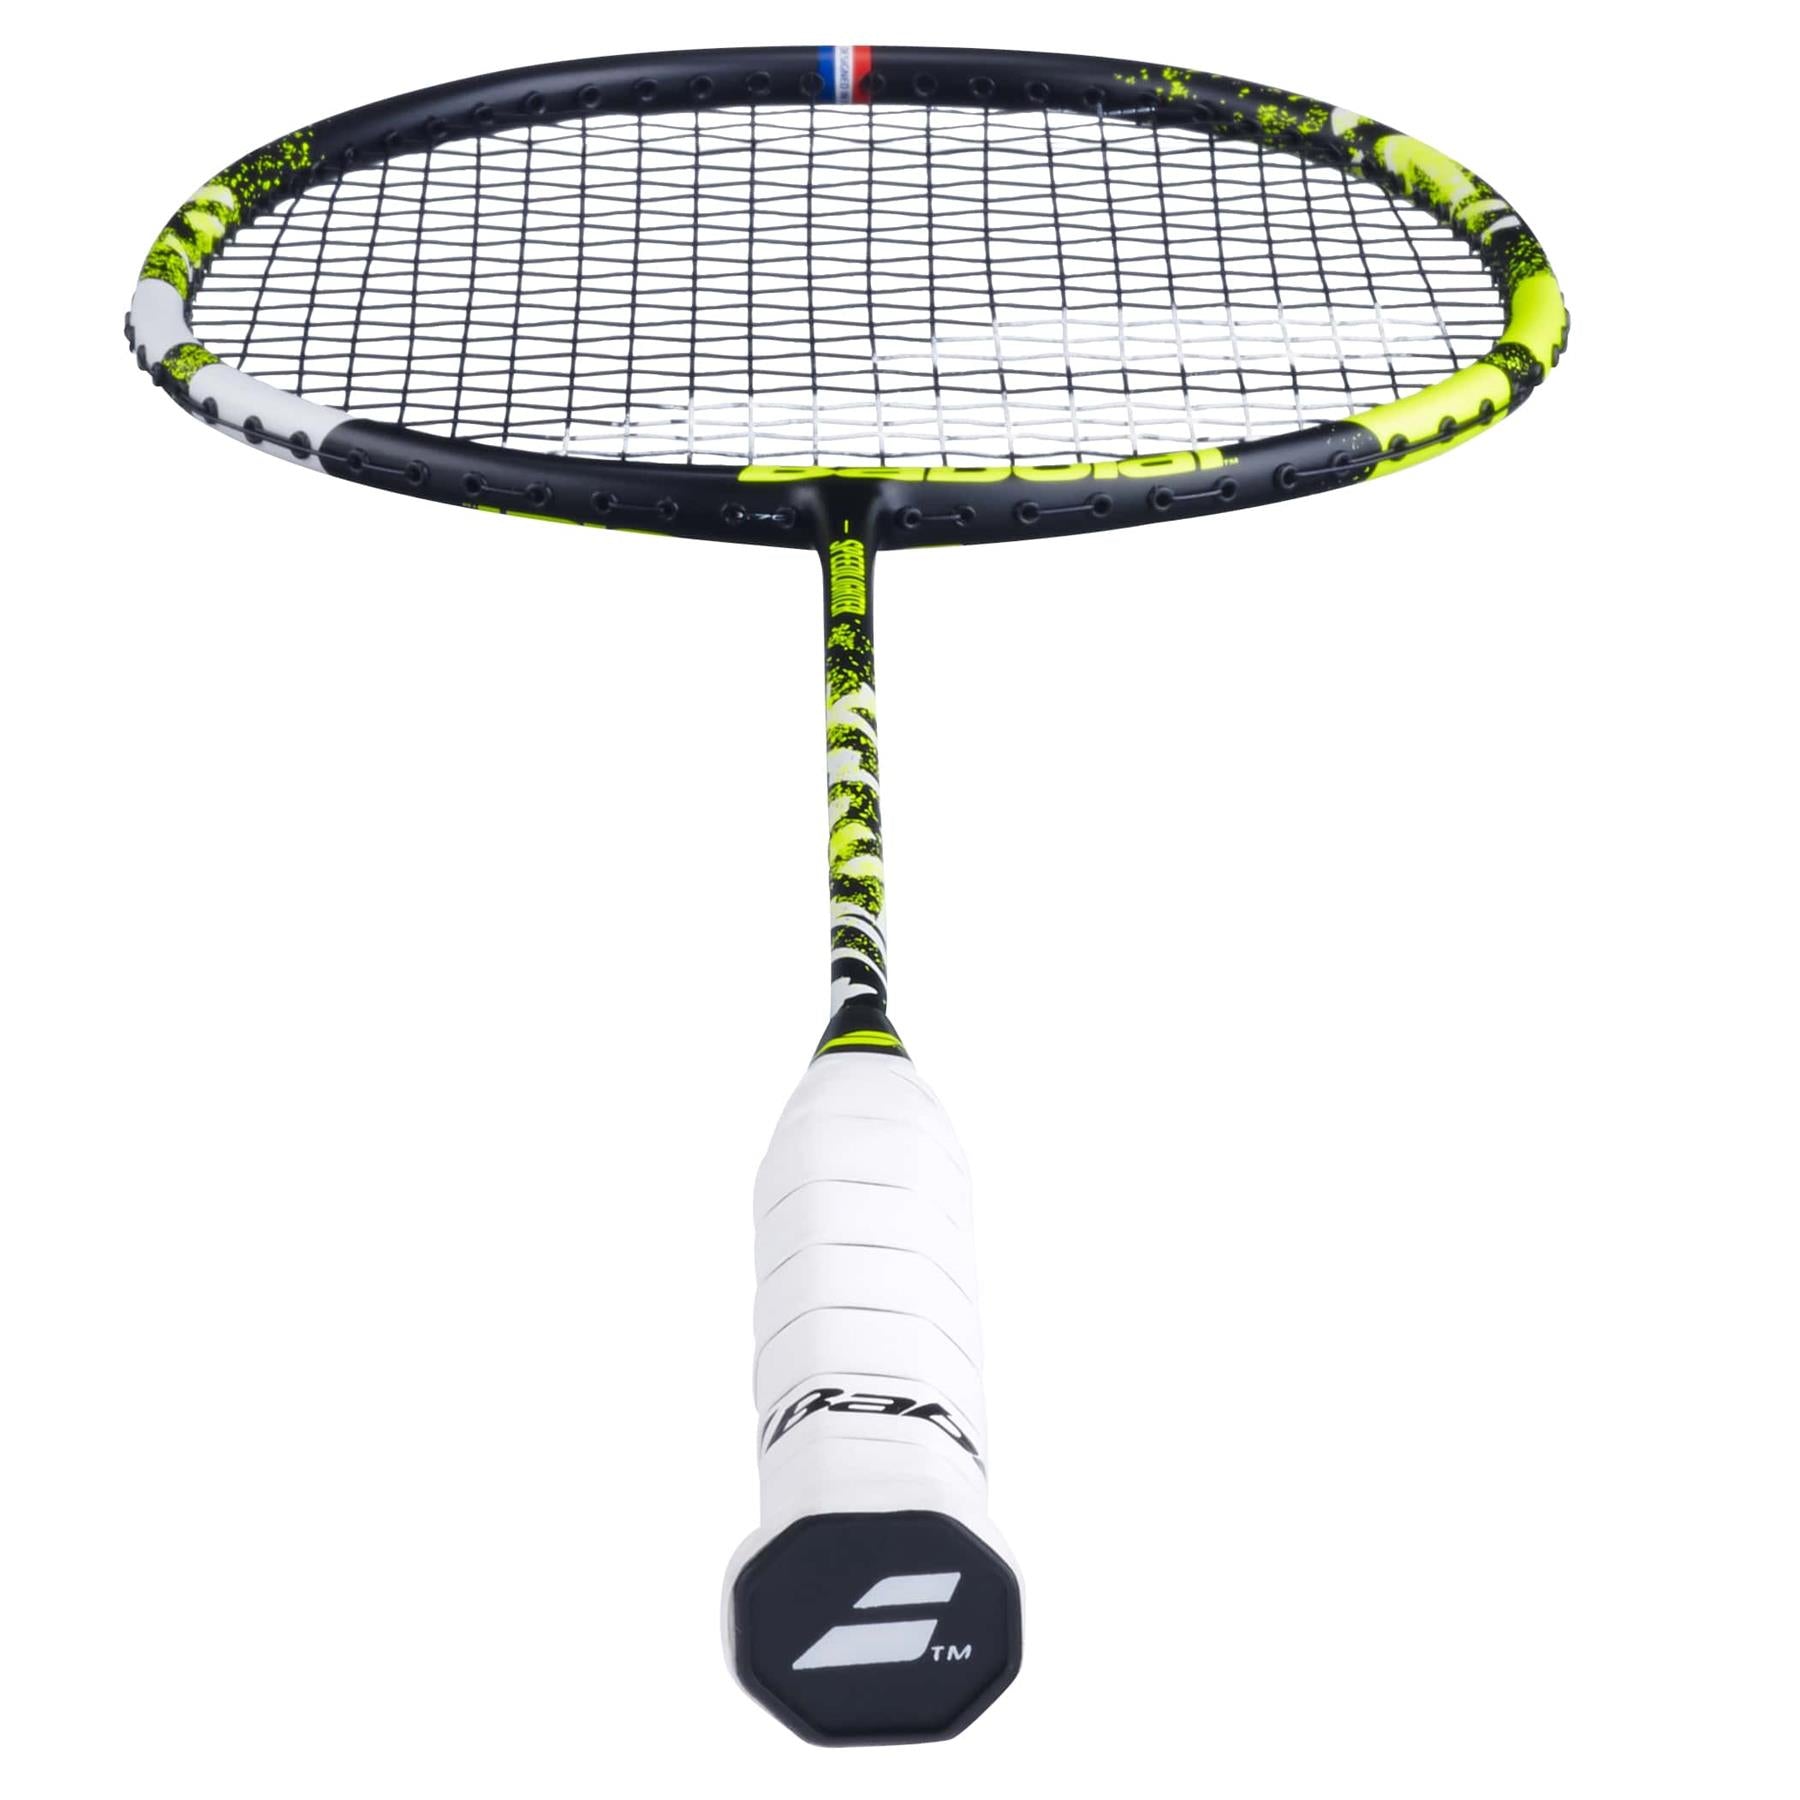 Babolat Speedlighter Junior Badminton Racket - Black / Green - Cap